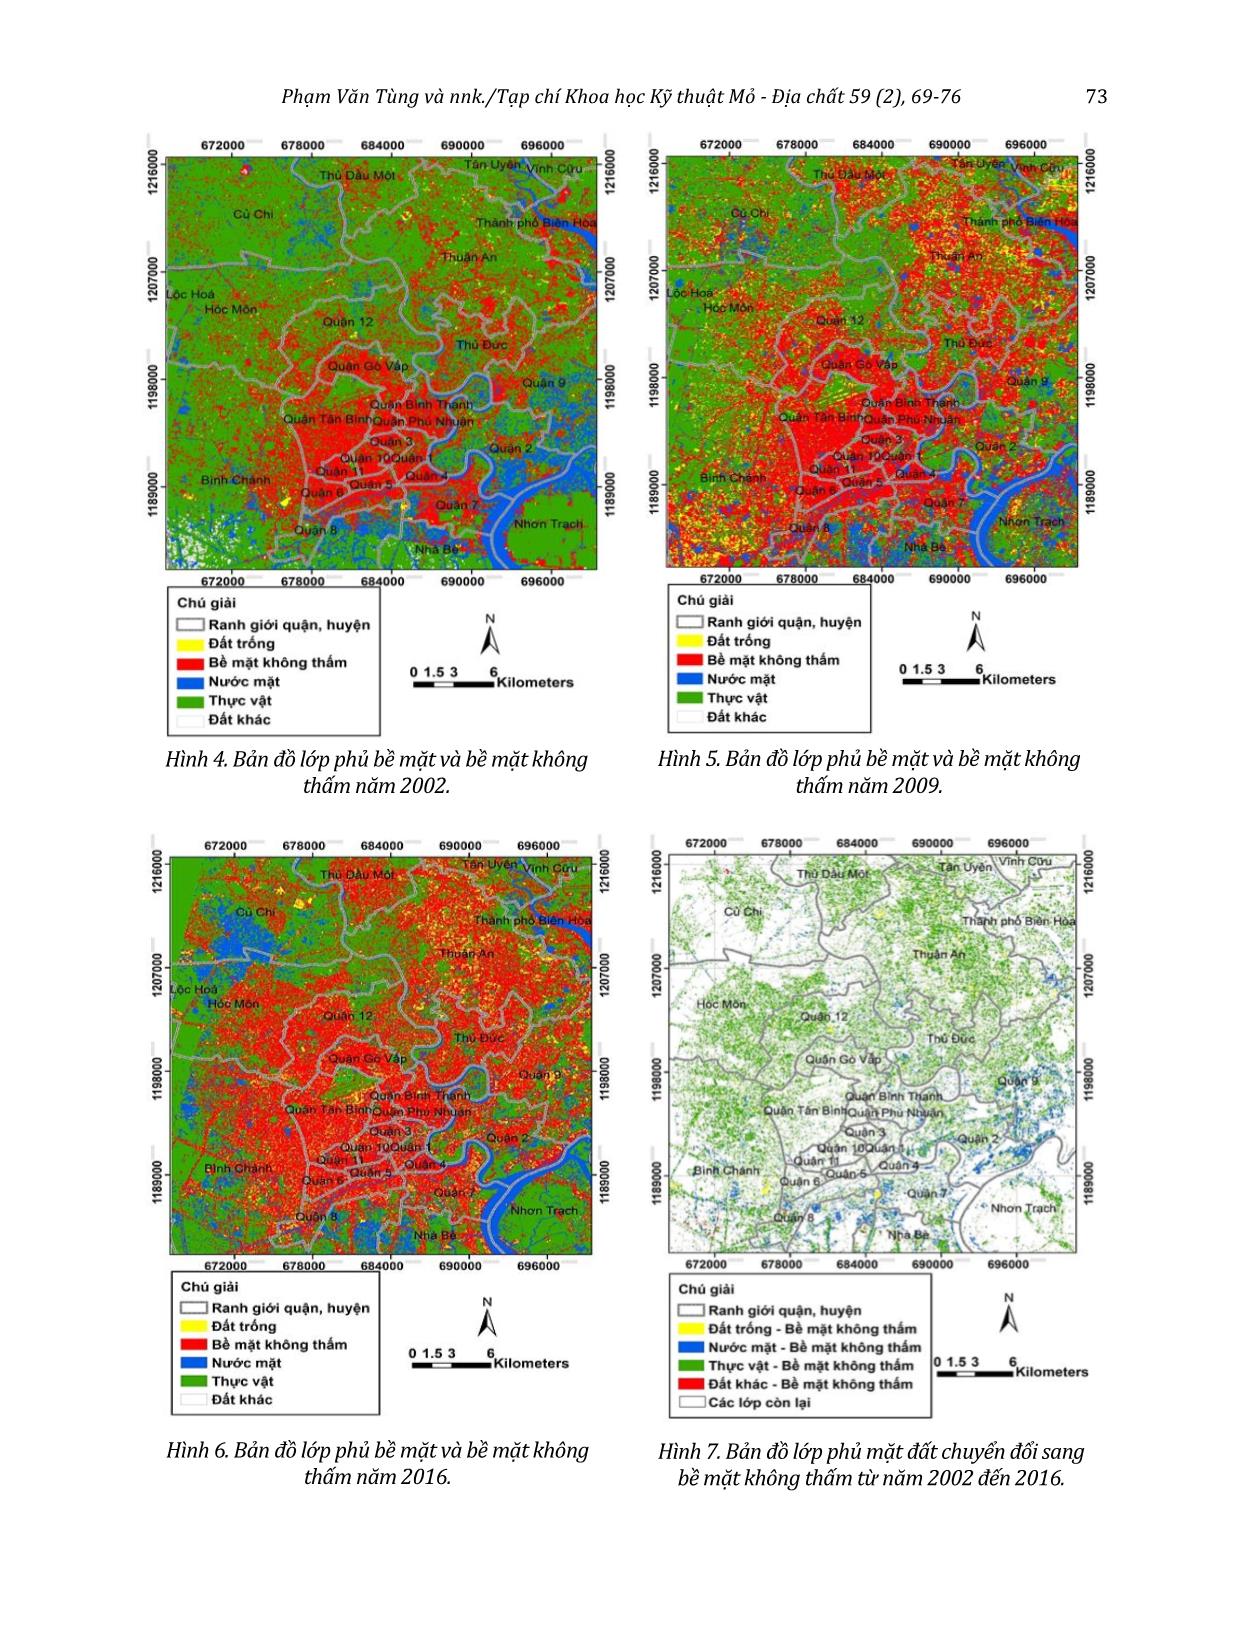 Quan trắc sự mở rộng bề mặt không thấm bằng dữ liệu ảnh Spot-5 và Sentinel-2 ở khu vực Thành phố Hồ Chí Minh trang 5